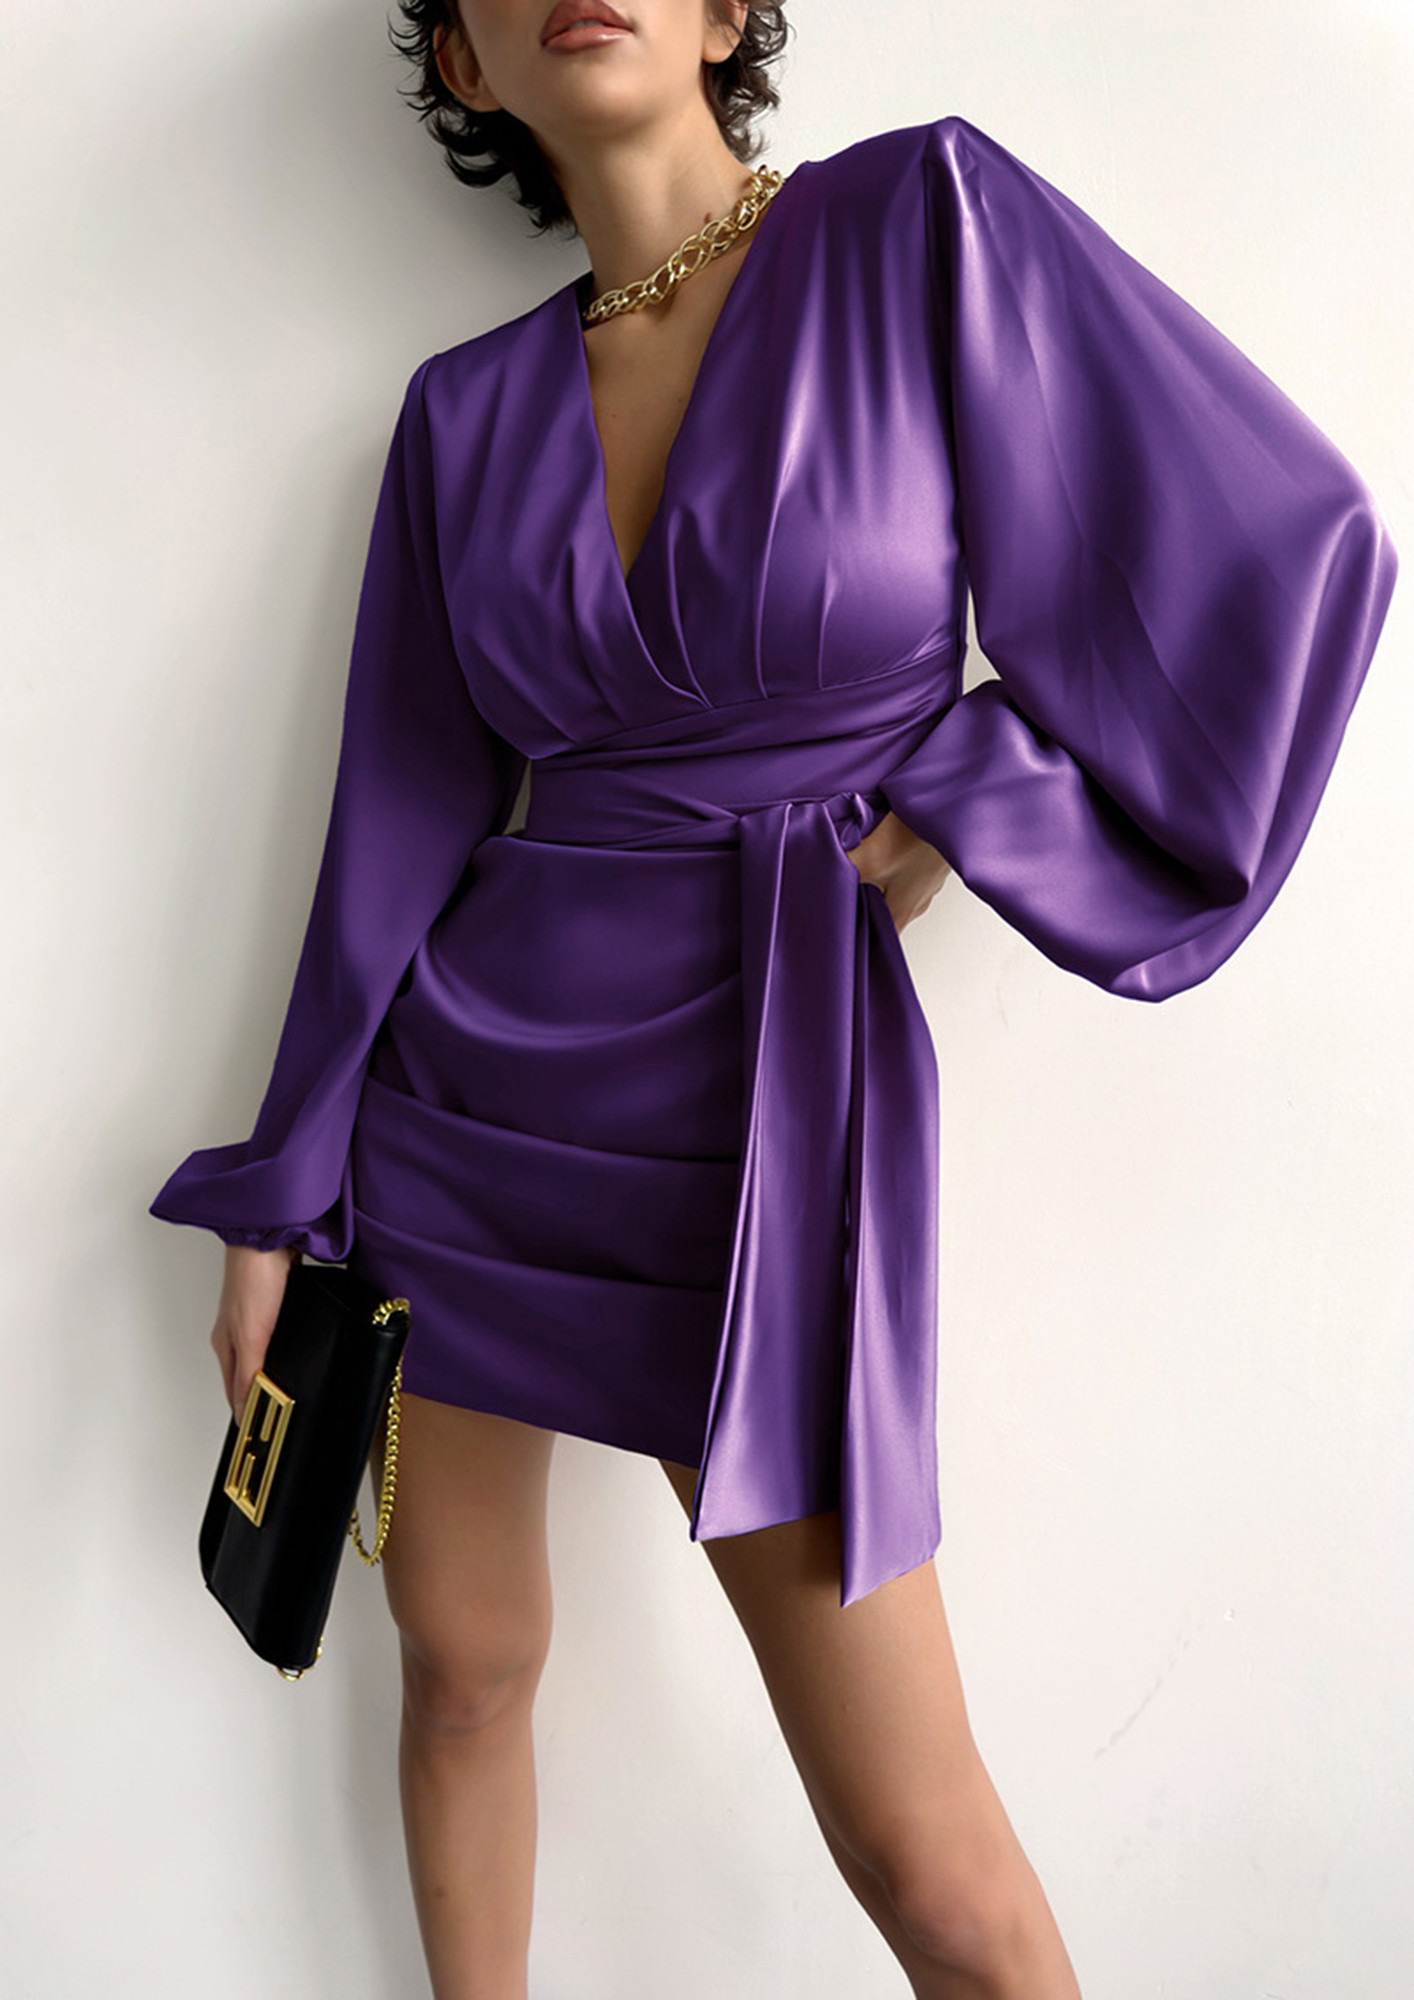 Shop Online Girls Purple Bow Applique Party Dress at ₹1989